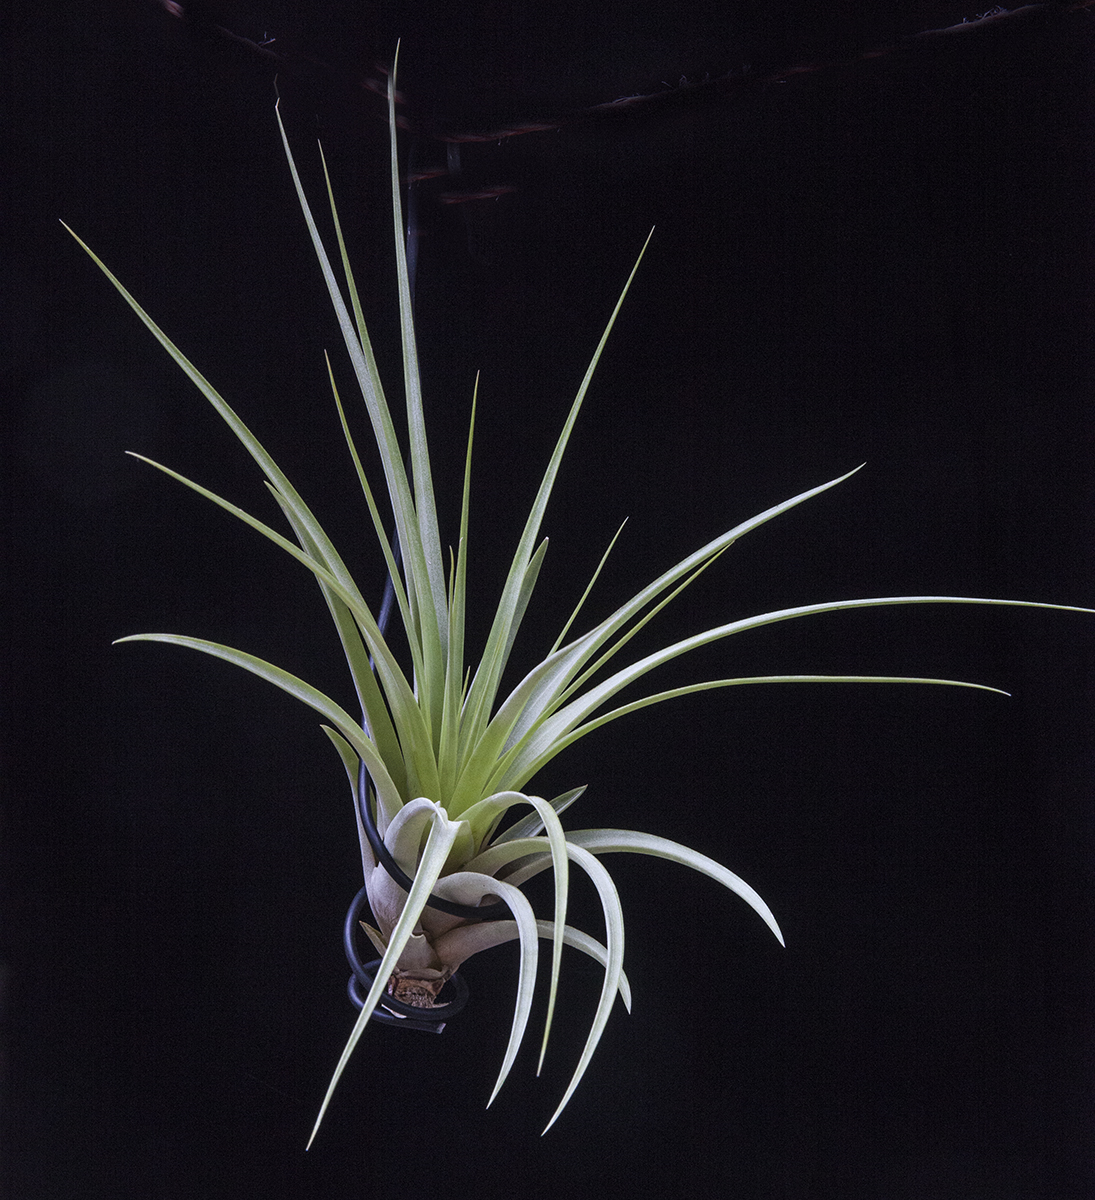 Tillandsia fasciculata Estie, catalogue of Bromeliad plants